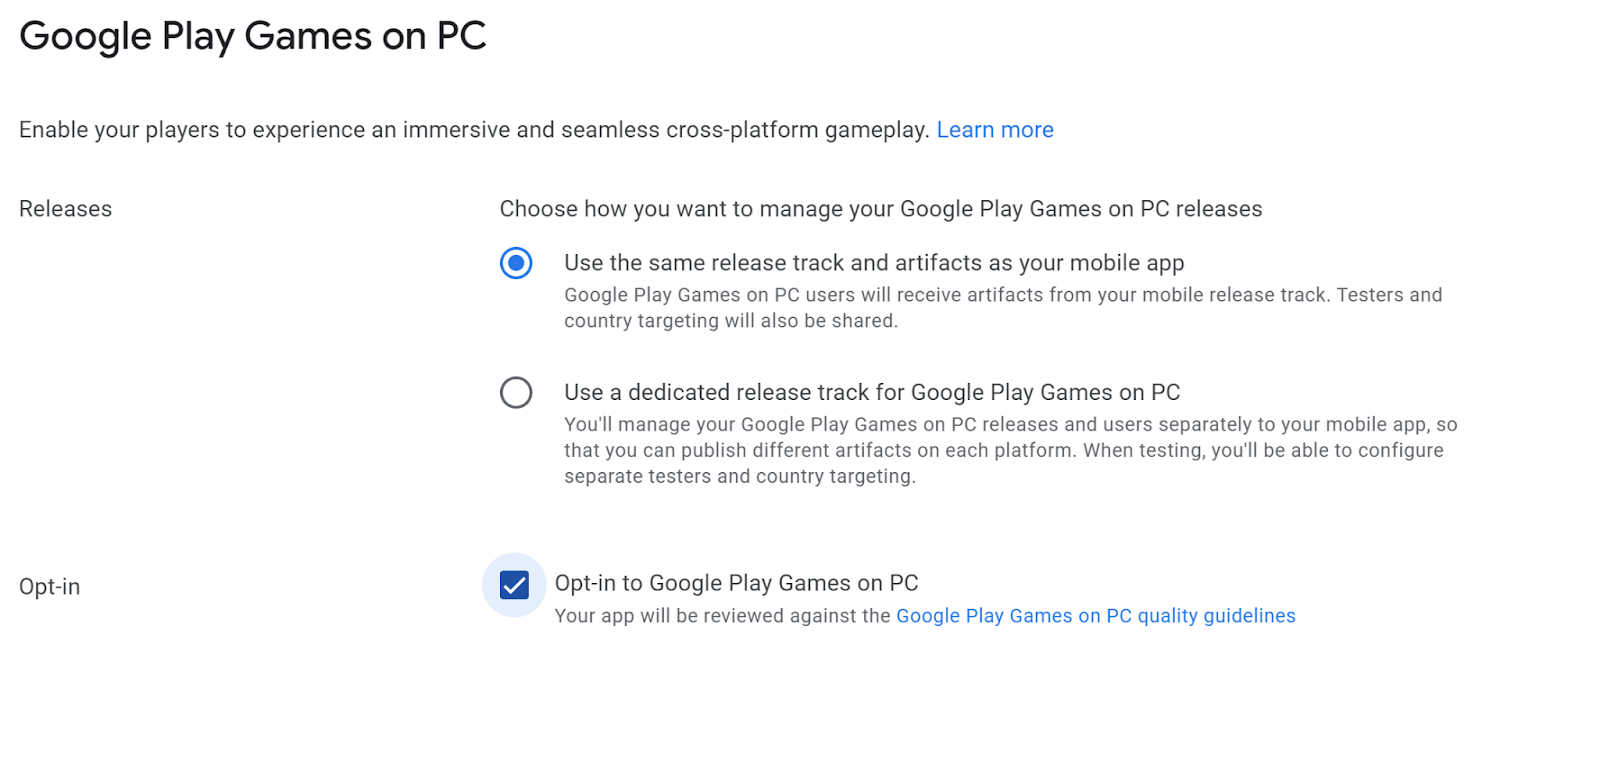 Zrzut ekranu z informacją o tym, czy chcesz używać ścieżki przeznaczonej do Gier Google Play na PC